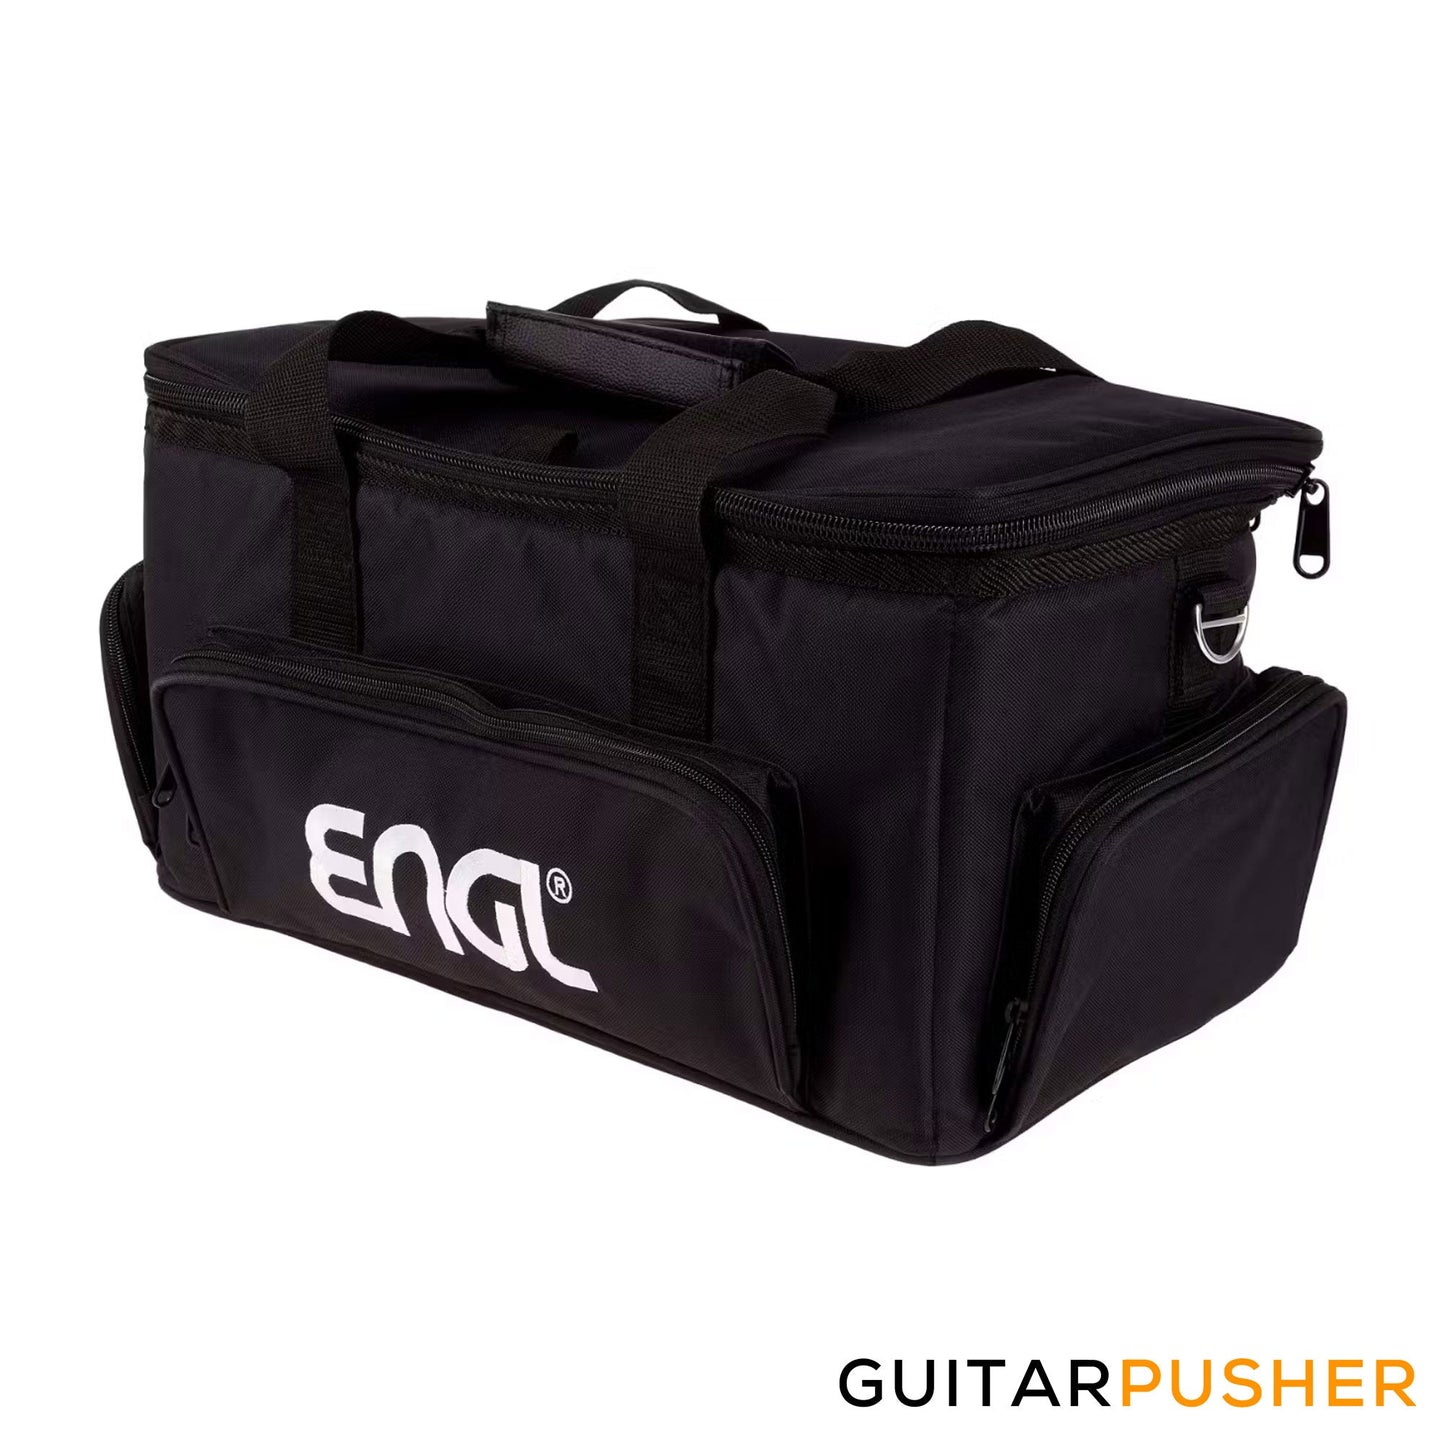 ENGL Amps 15-30W Gig Bag for E307, E309, E315, & E633 Amplifier Heads